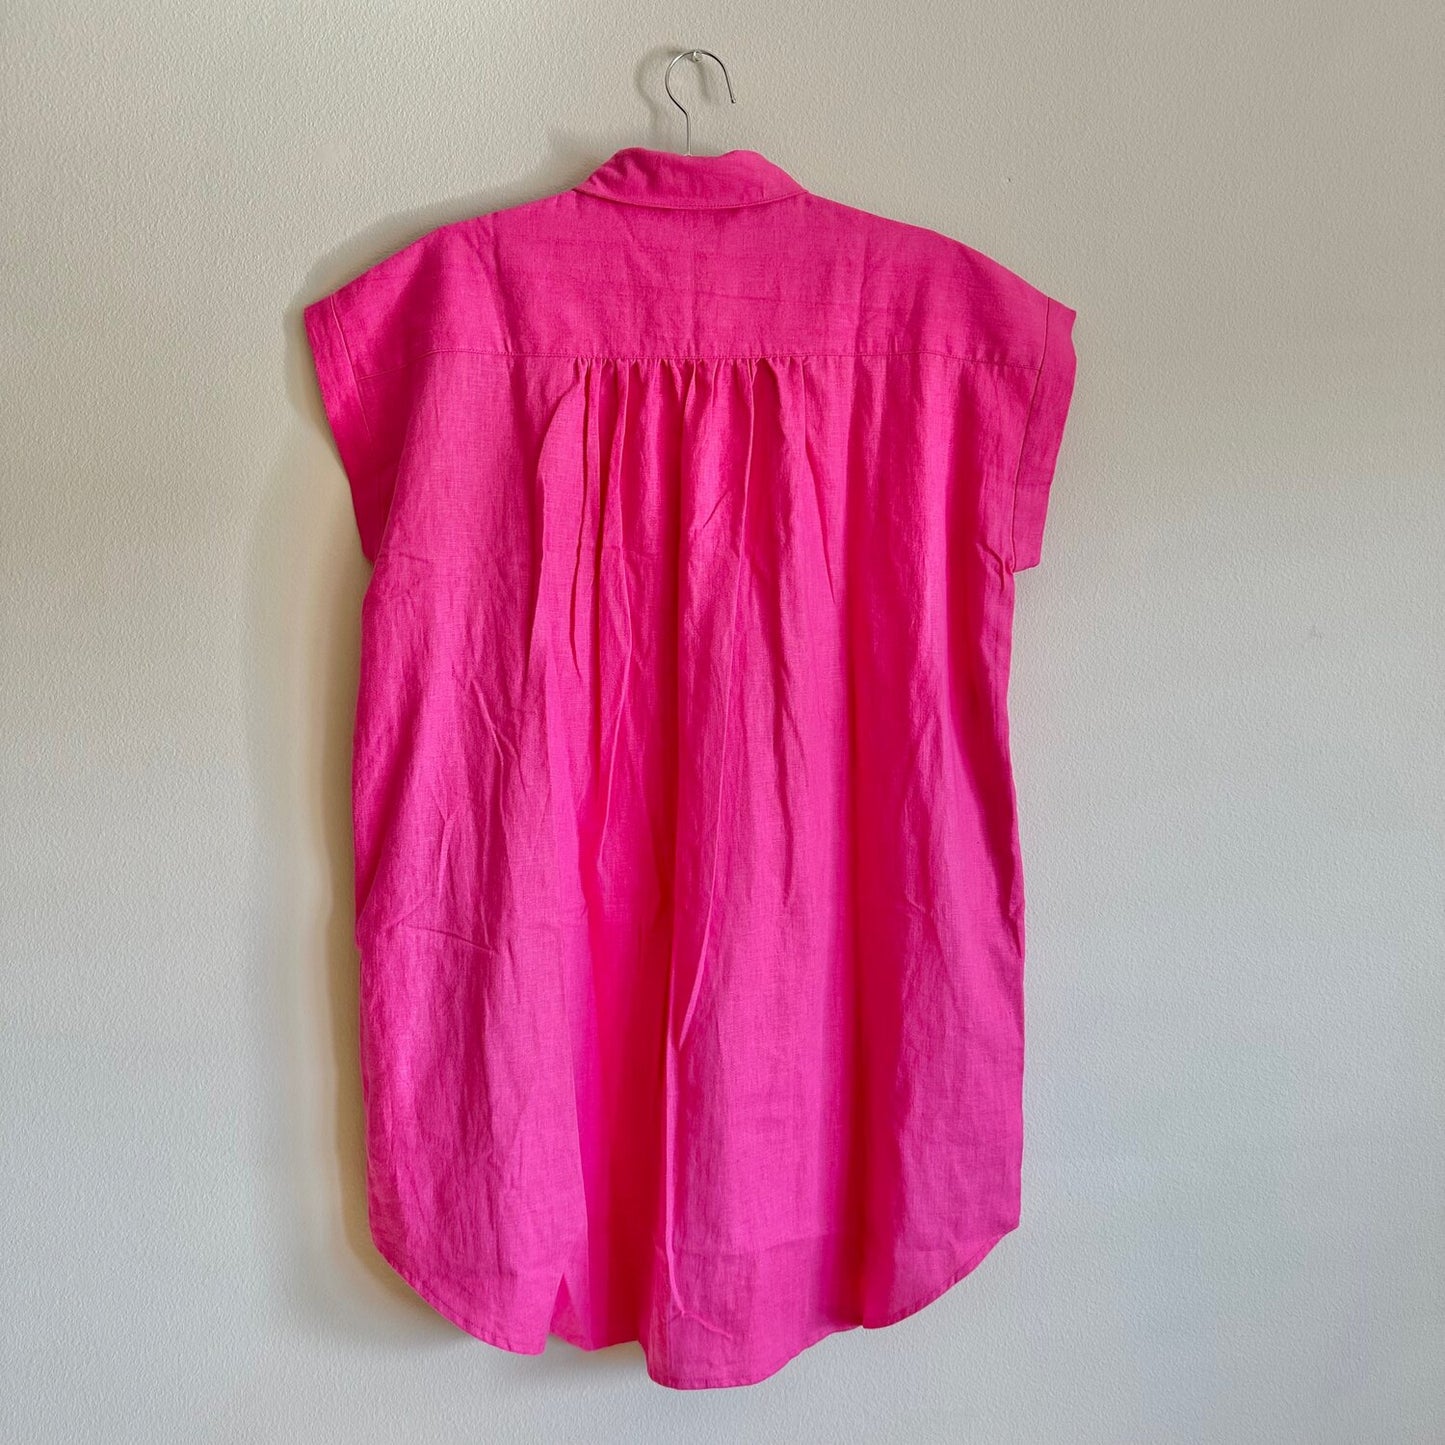 Willamette Fuschia Linen Shirt Dress - SZ OSP